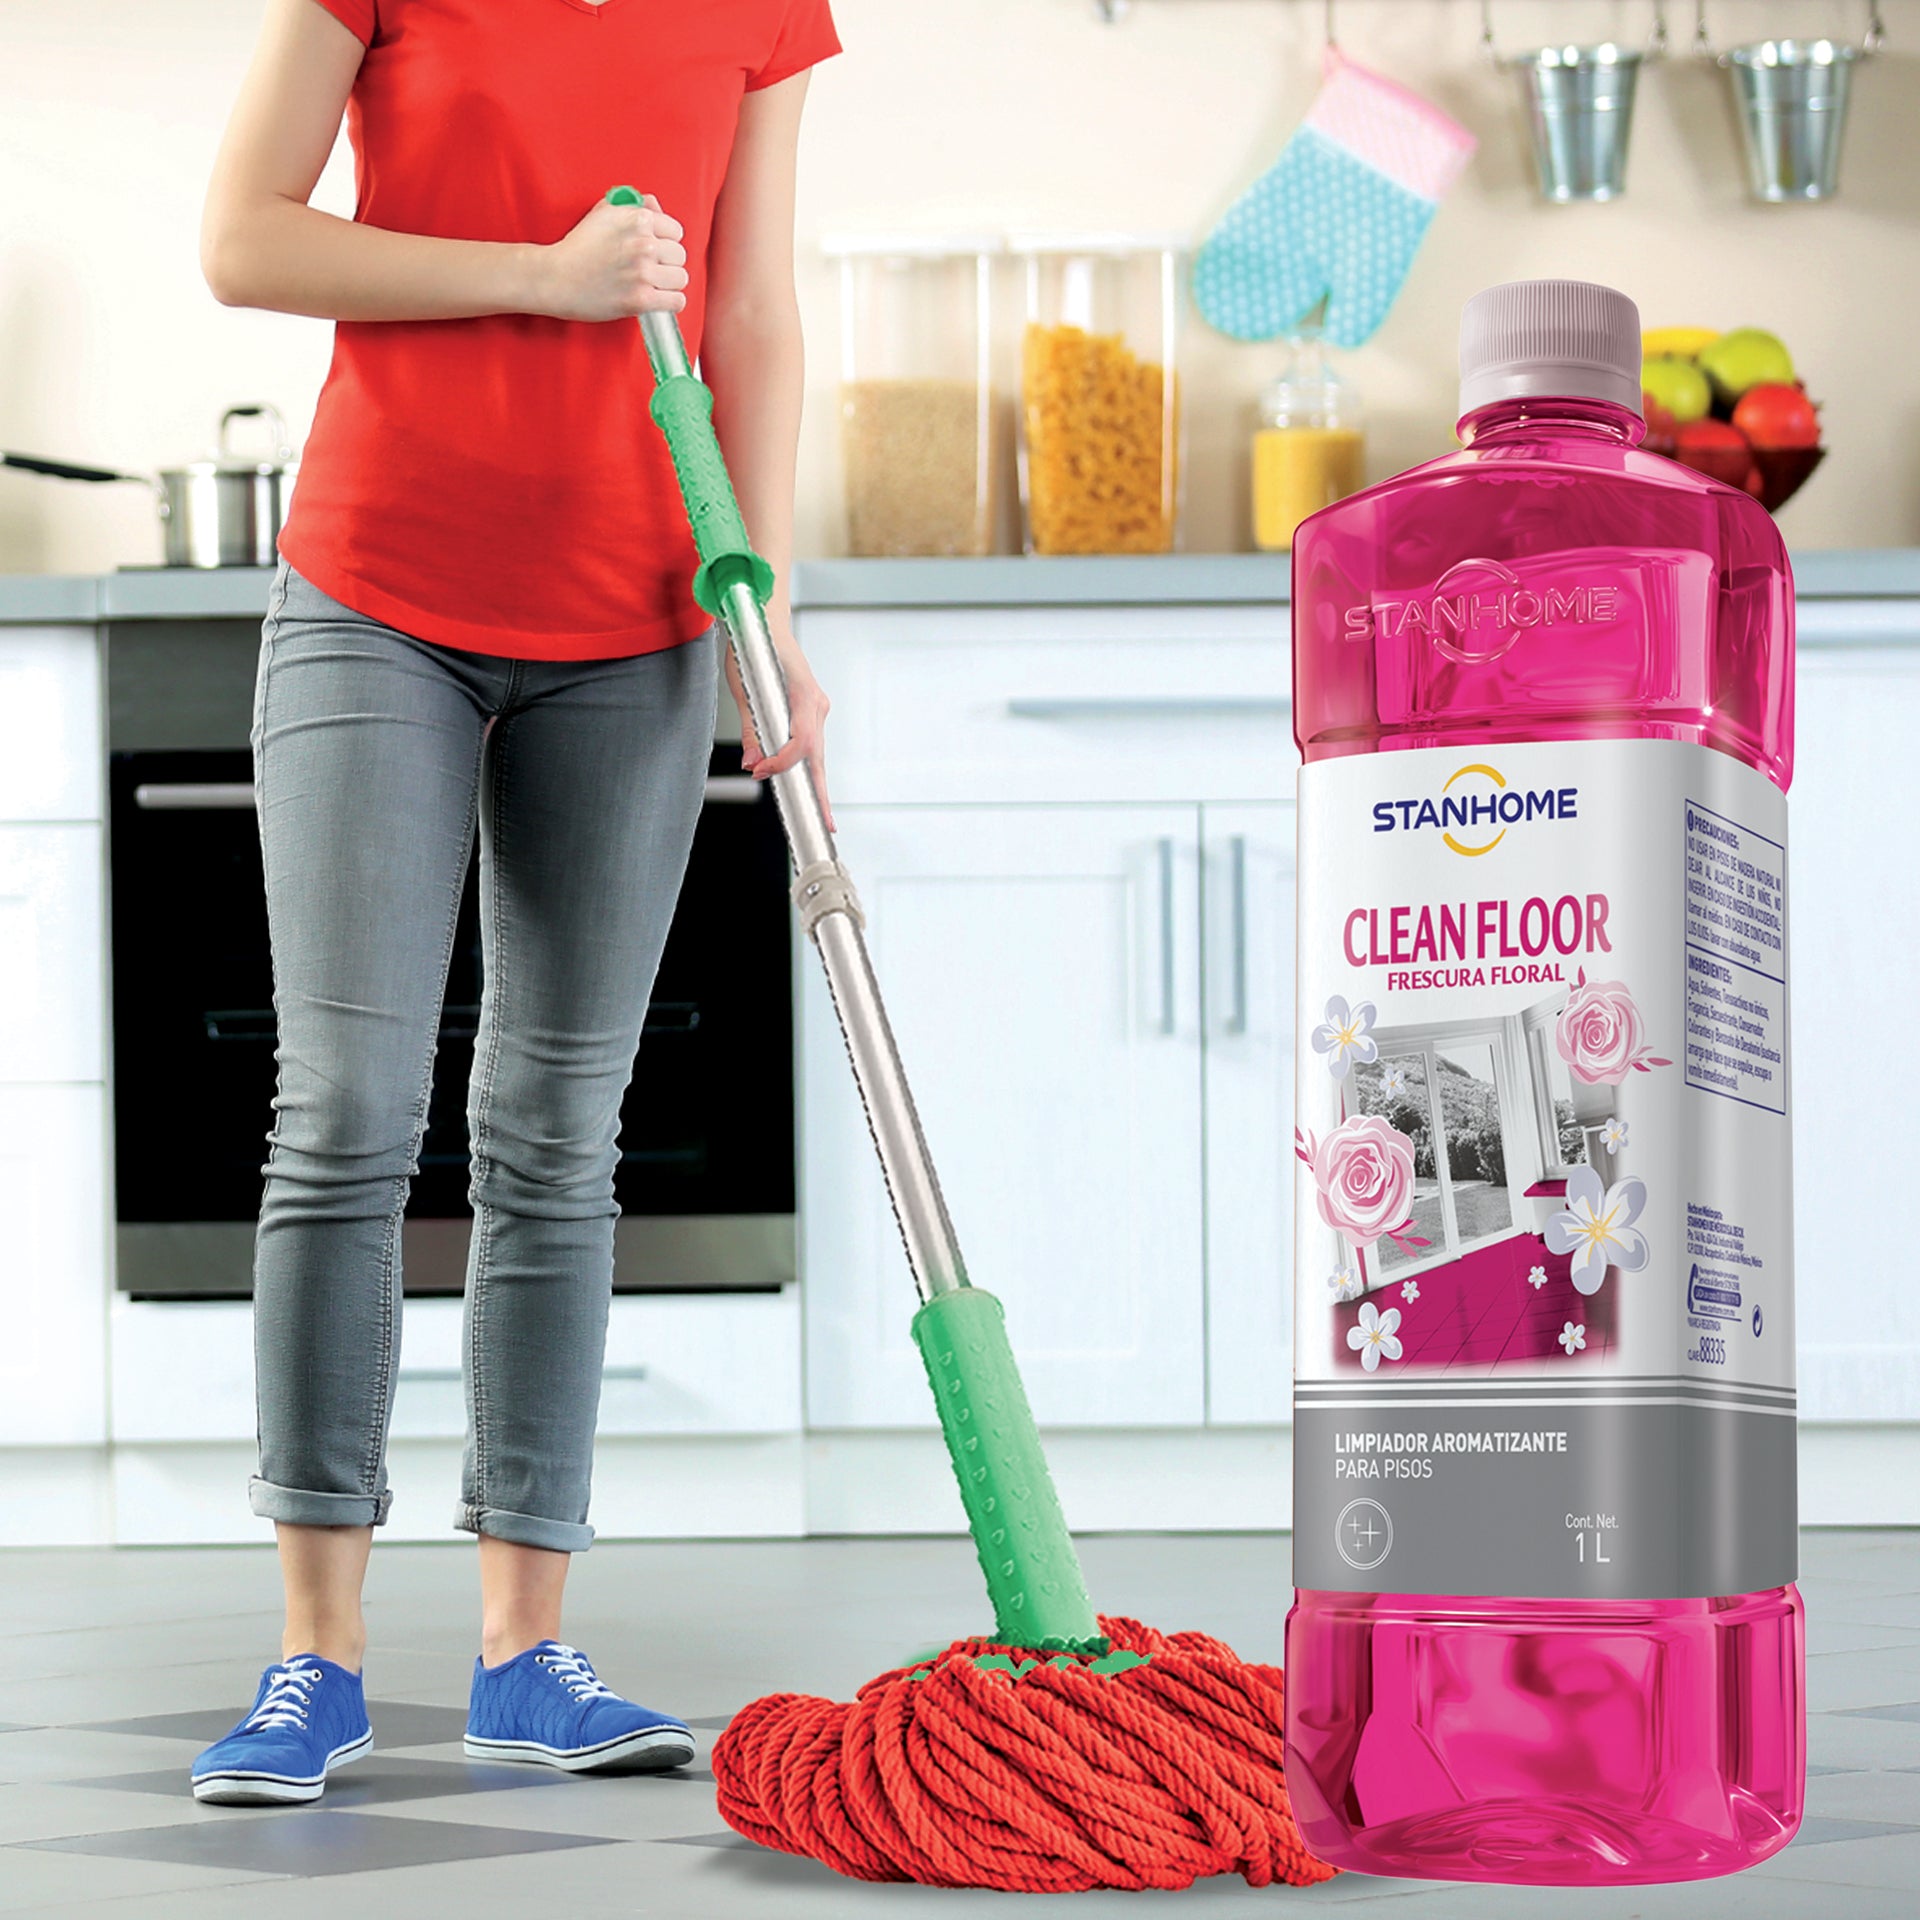 StanhomeProductos de limpieza del hogar